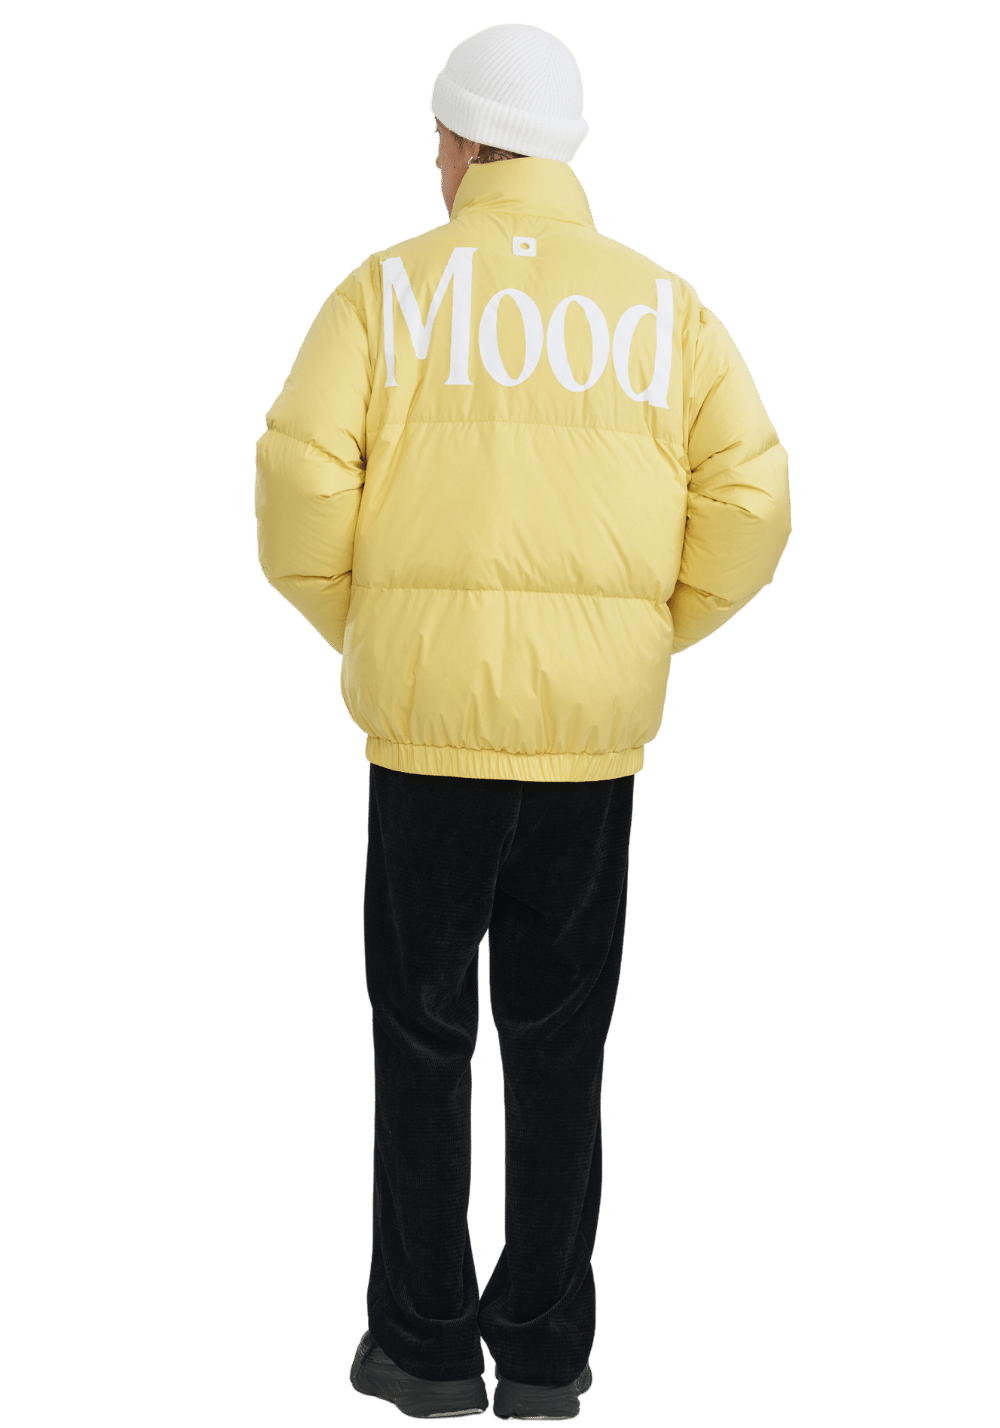 'Mood' Printed Down Jacket - PSYLOS 1, 'Mood' Printed Down Jacket, Down Jacket, PCLP, PSYLOS 1